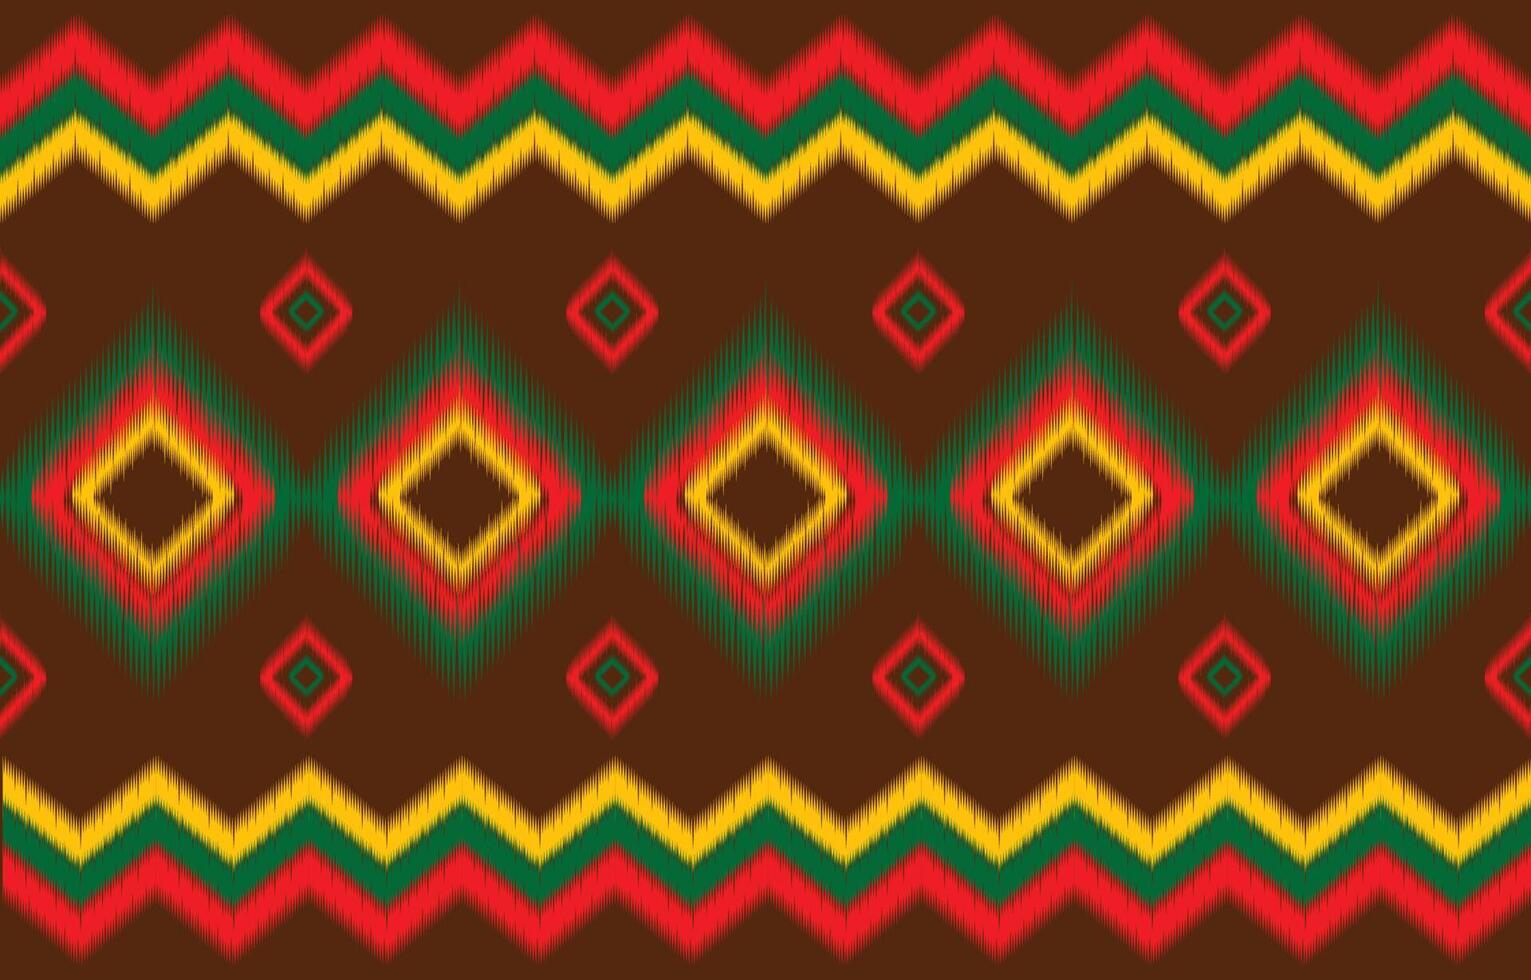 kleding stof meetkundig etnisch ontwerp. vector mode achtergrond tapijt kleding ikat batik kilim lijn patroon inheems motief.